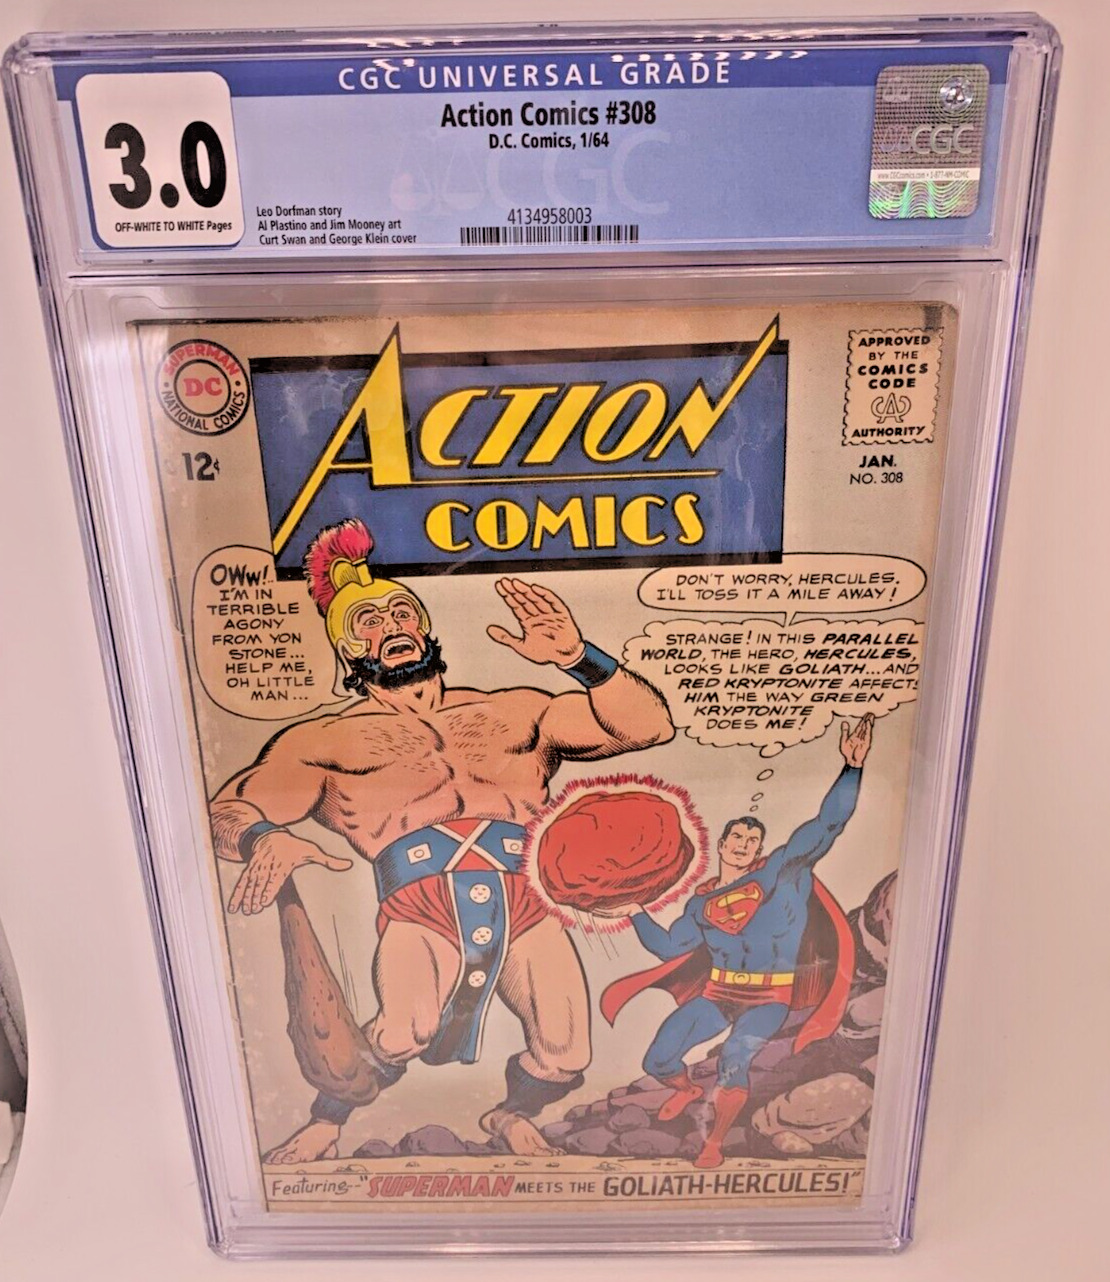 Action Comics #308 - CGC 3.0 - Feature Superman Meets Hercules (1964) D.C Comics